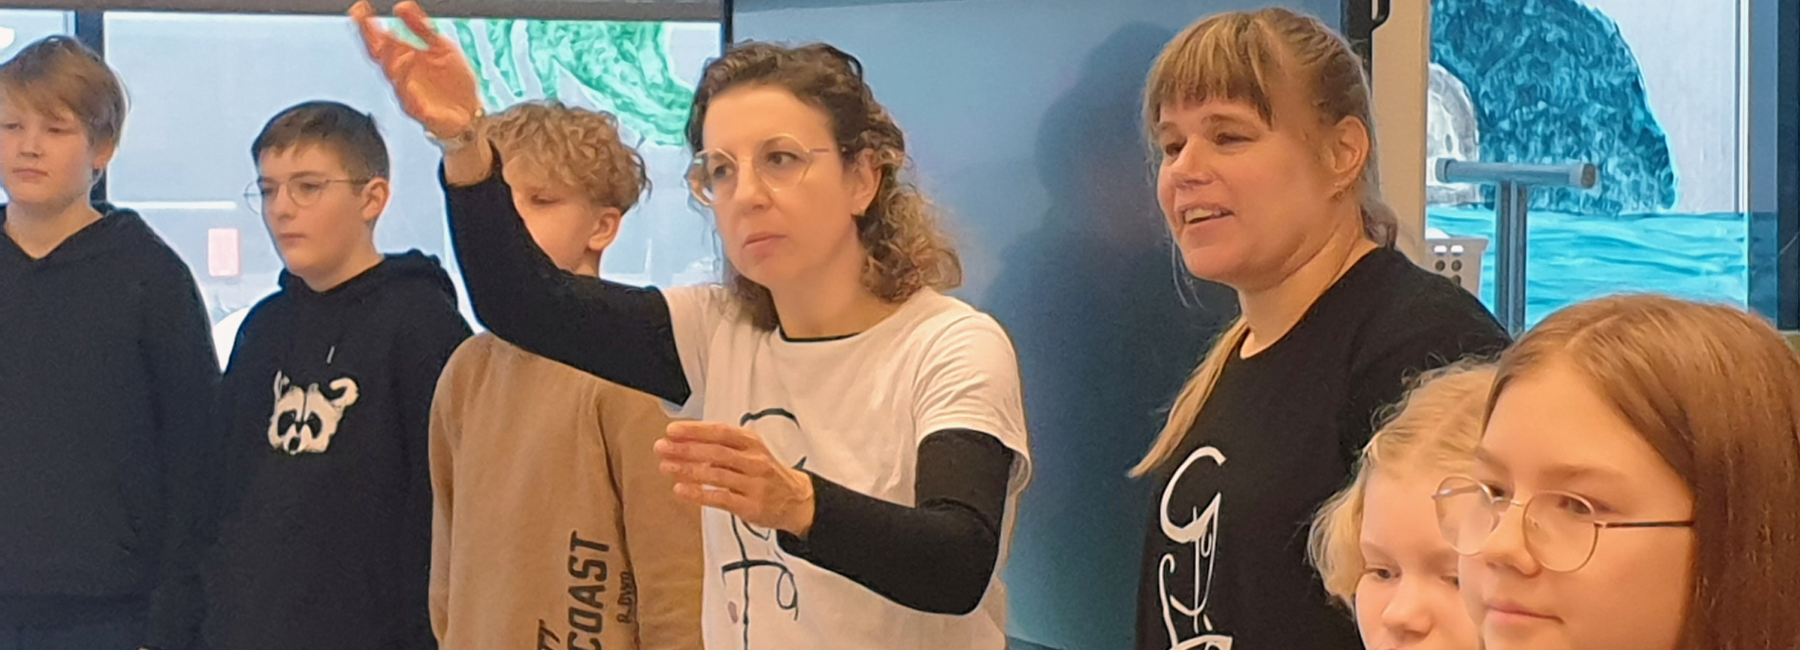 Laura Fatini antaa ohjeita, vieressä oikealla nuoristyöntekijä Hanna Puhakka